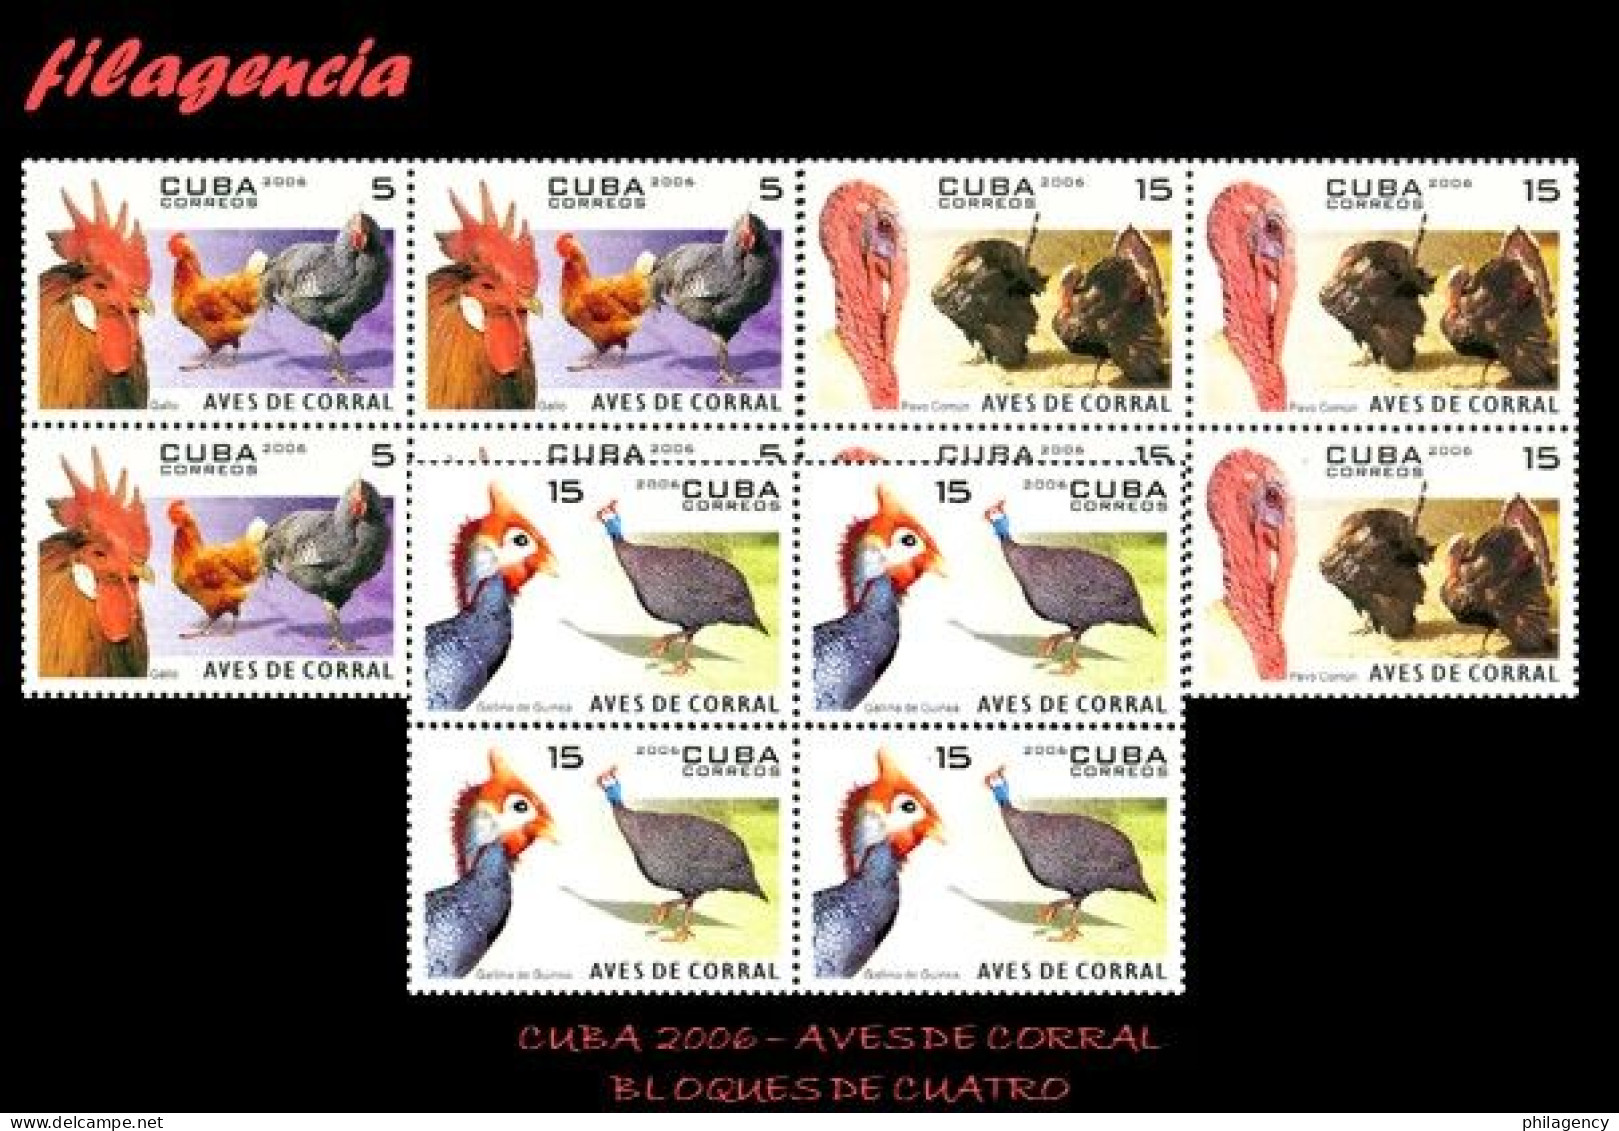 CUBA. BLOQUES DE CUATRO. 2006-13 FAUNA. AVES DE CORRAL - Nuevos